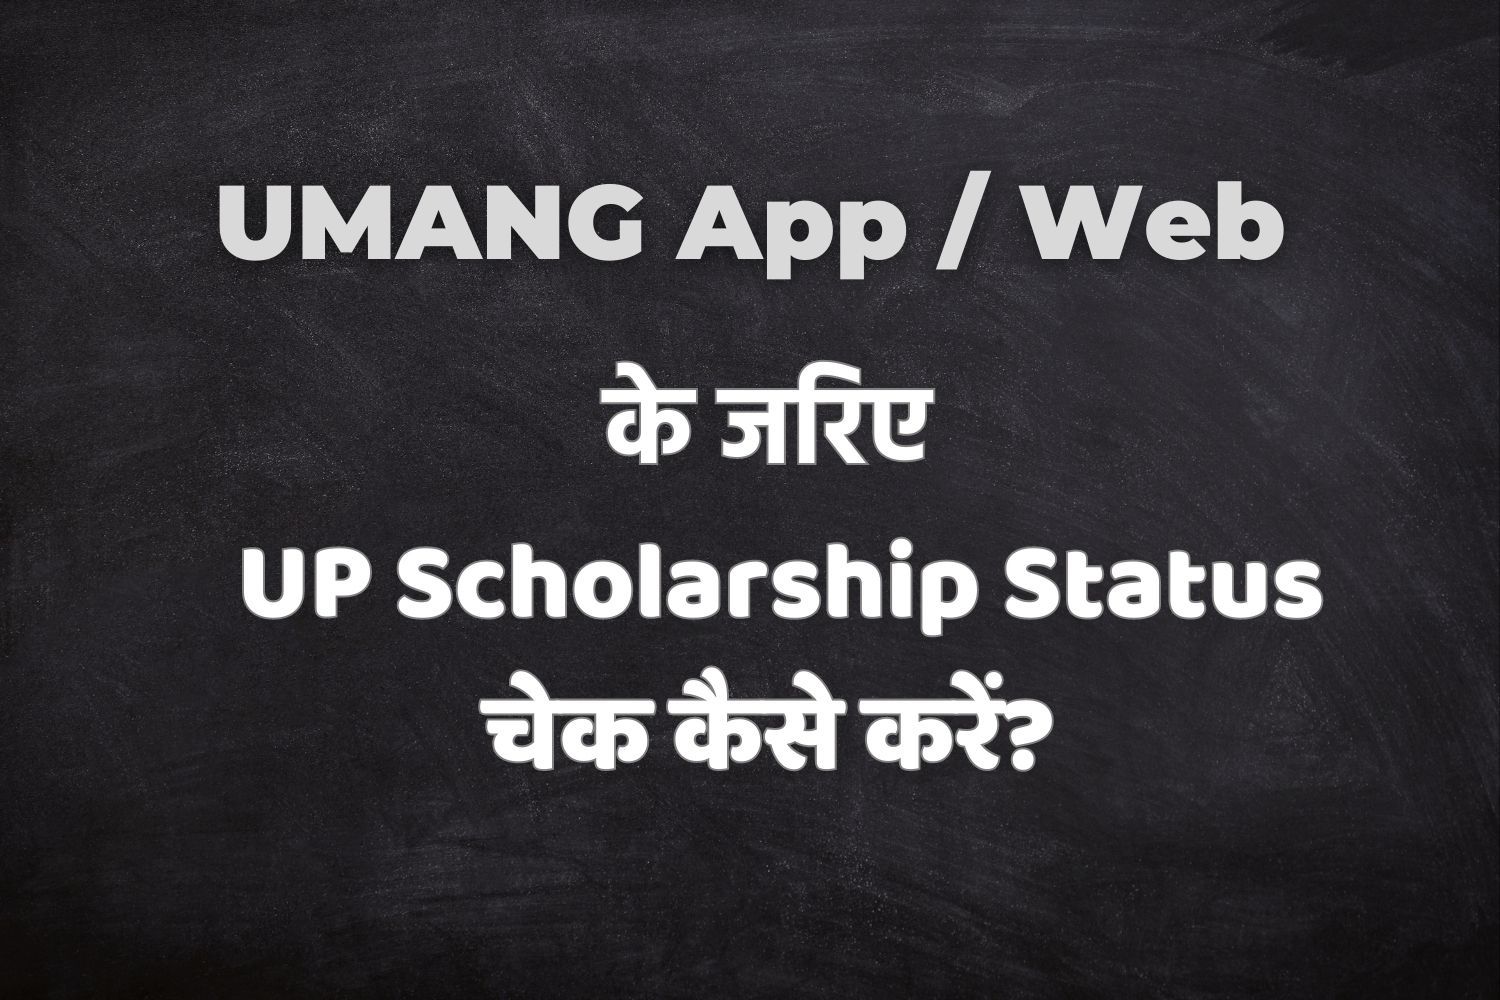 UMANG App / Web के जरिए UP Scholarship Status कैसे करें? जानें